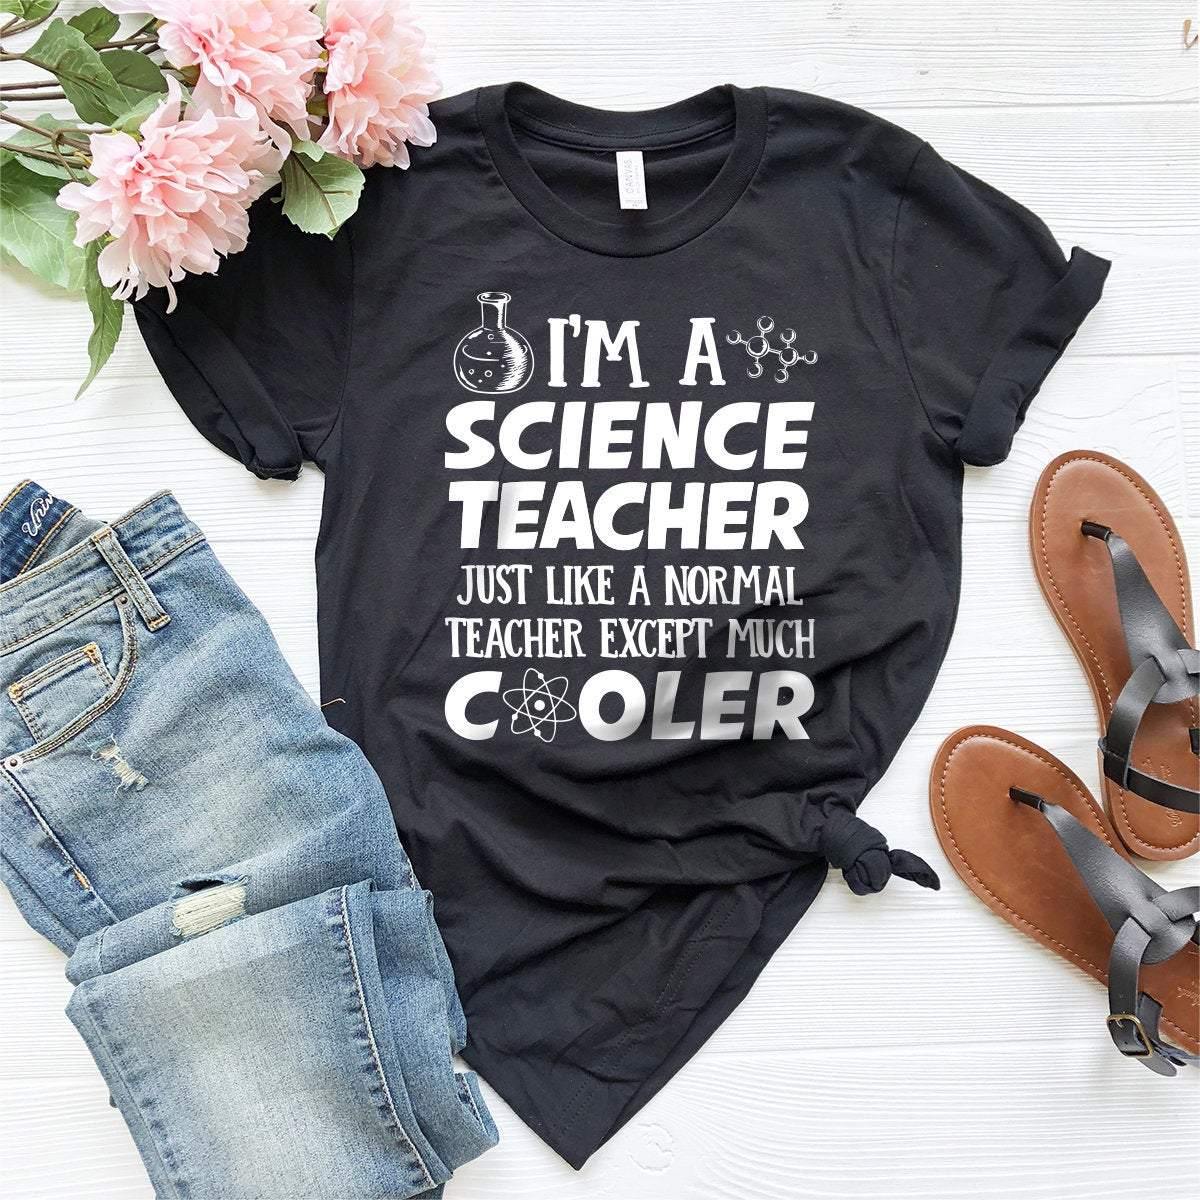 Cool Science Teacher Shirt, Science Teacher T-Shirt, Gift For Science Teacher, Science Shirt, I Am A Science Teacher Tee, Scientist T Shirt - Fastdeliverytees.com